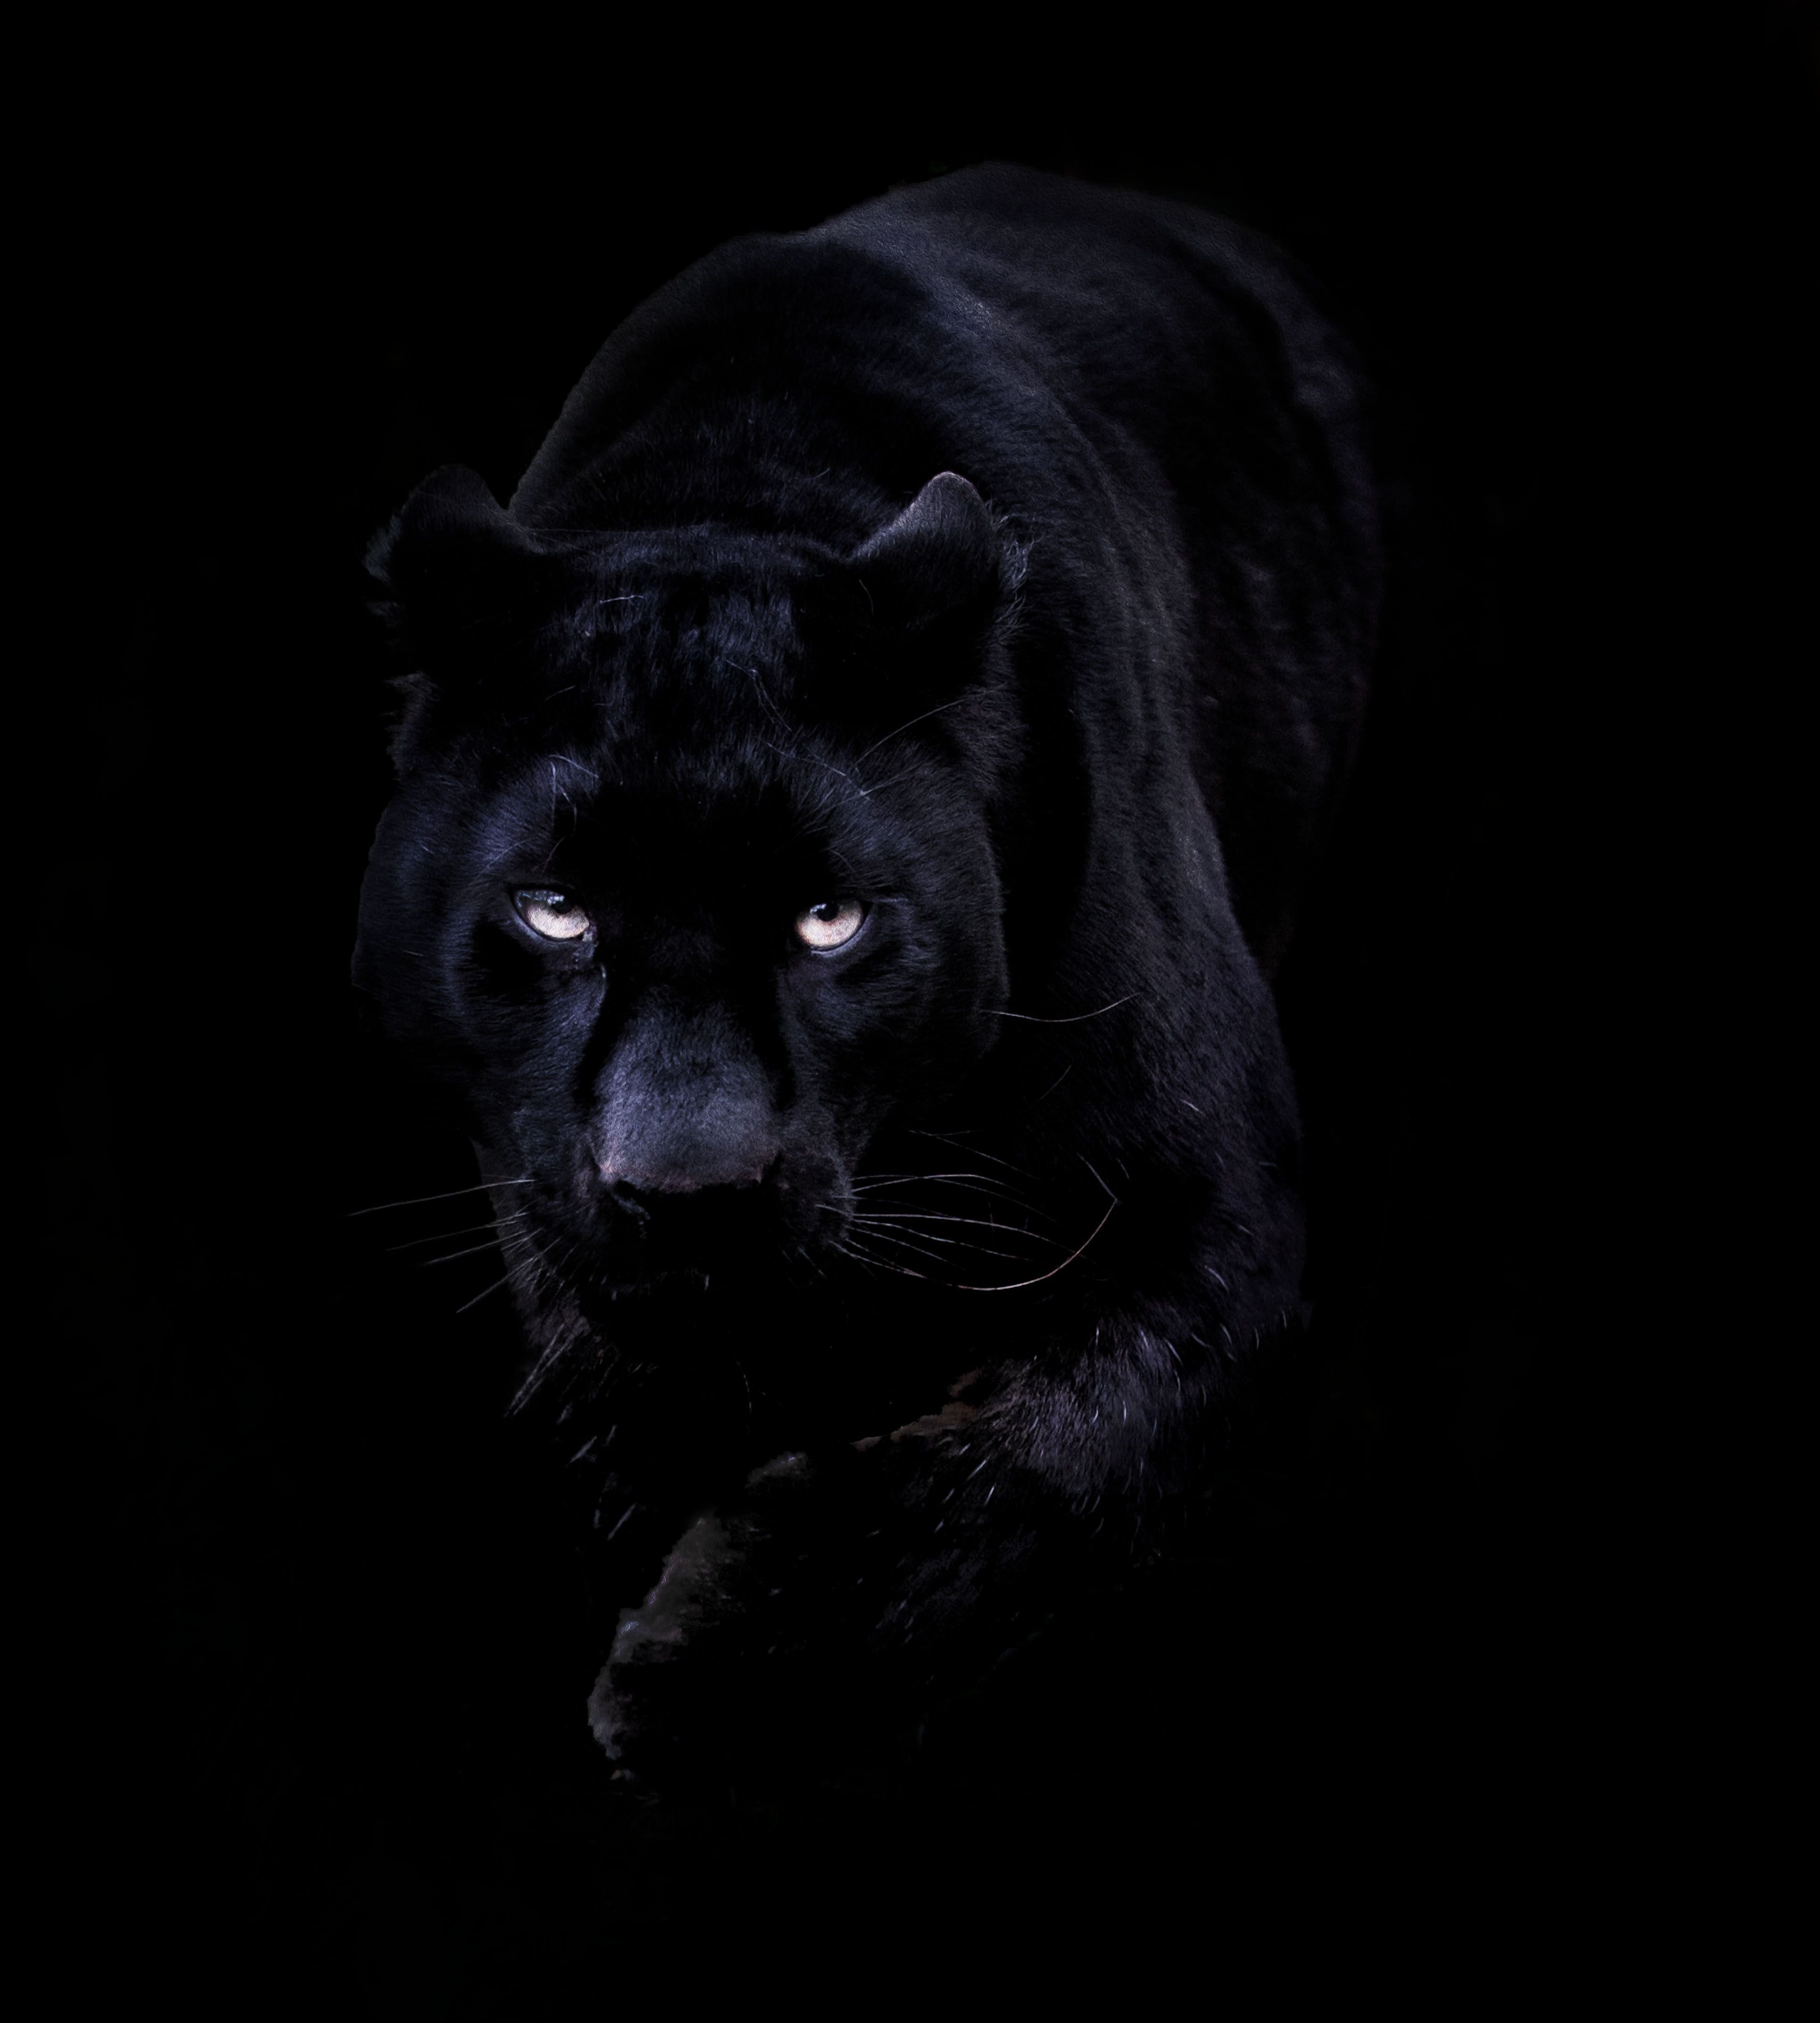 фанфик глаза пантеры светятся в ночи фото 38